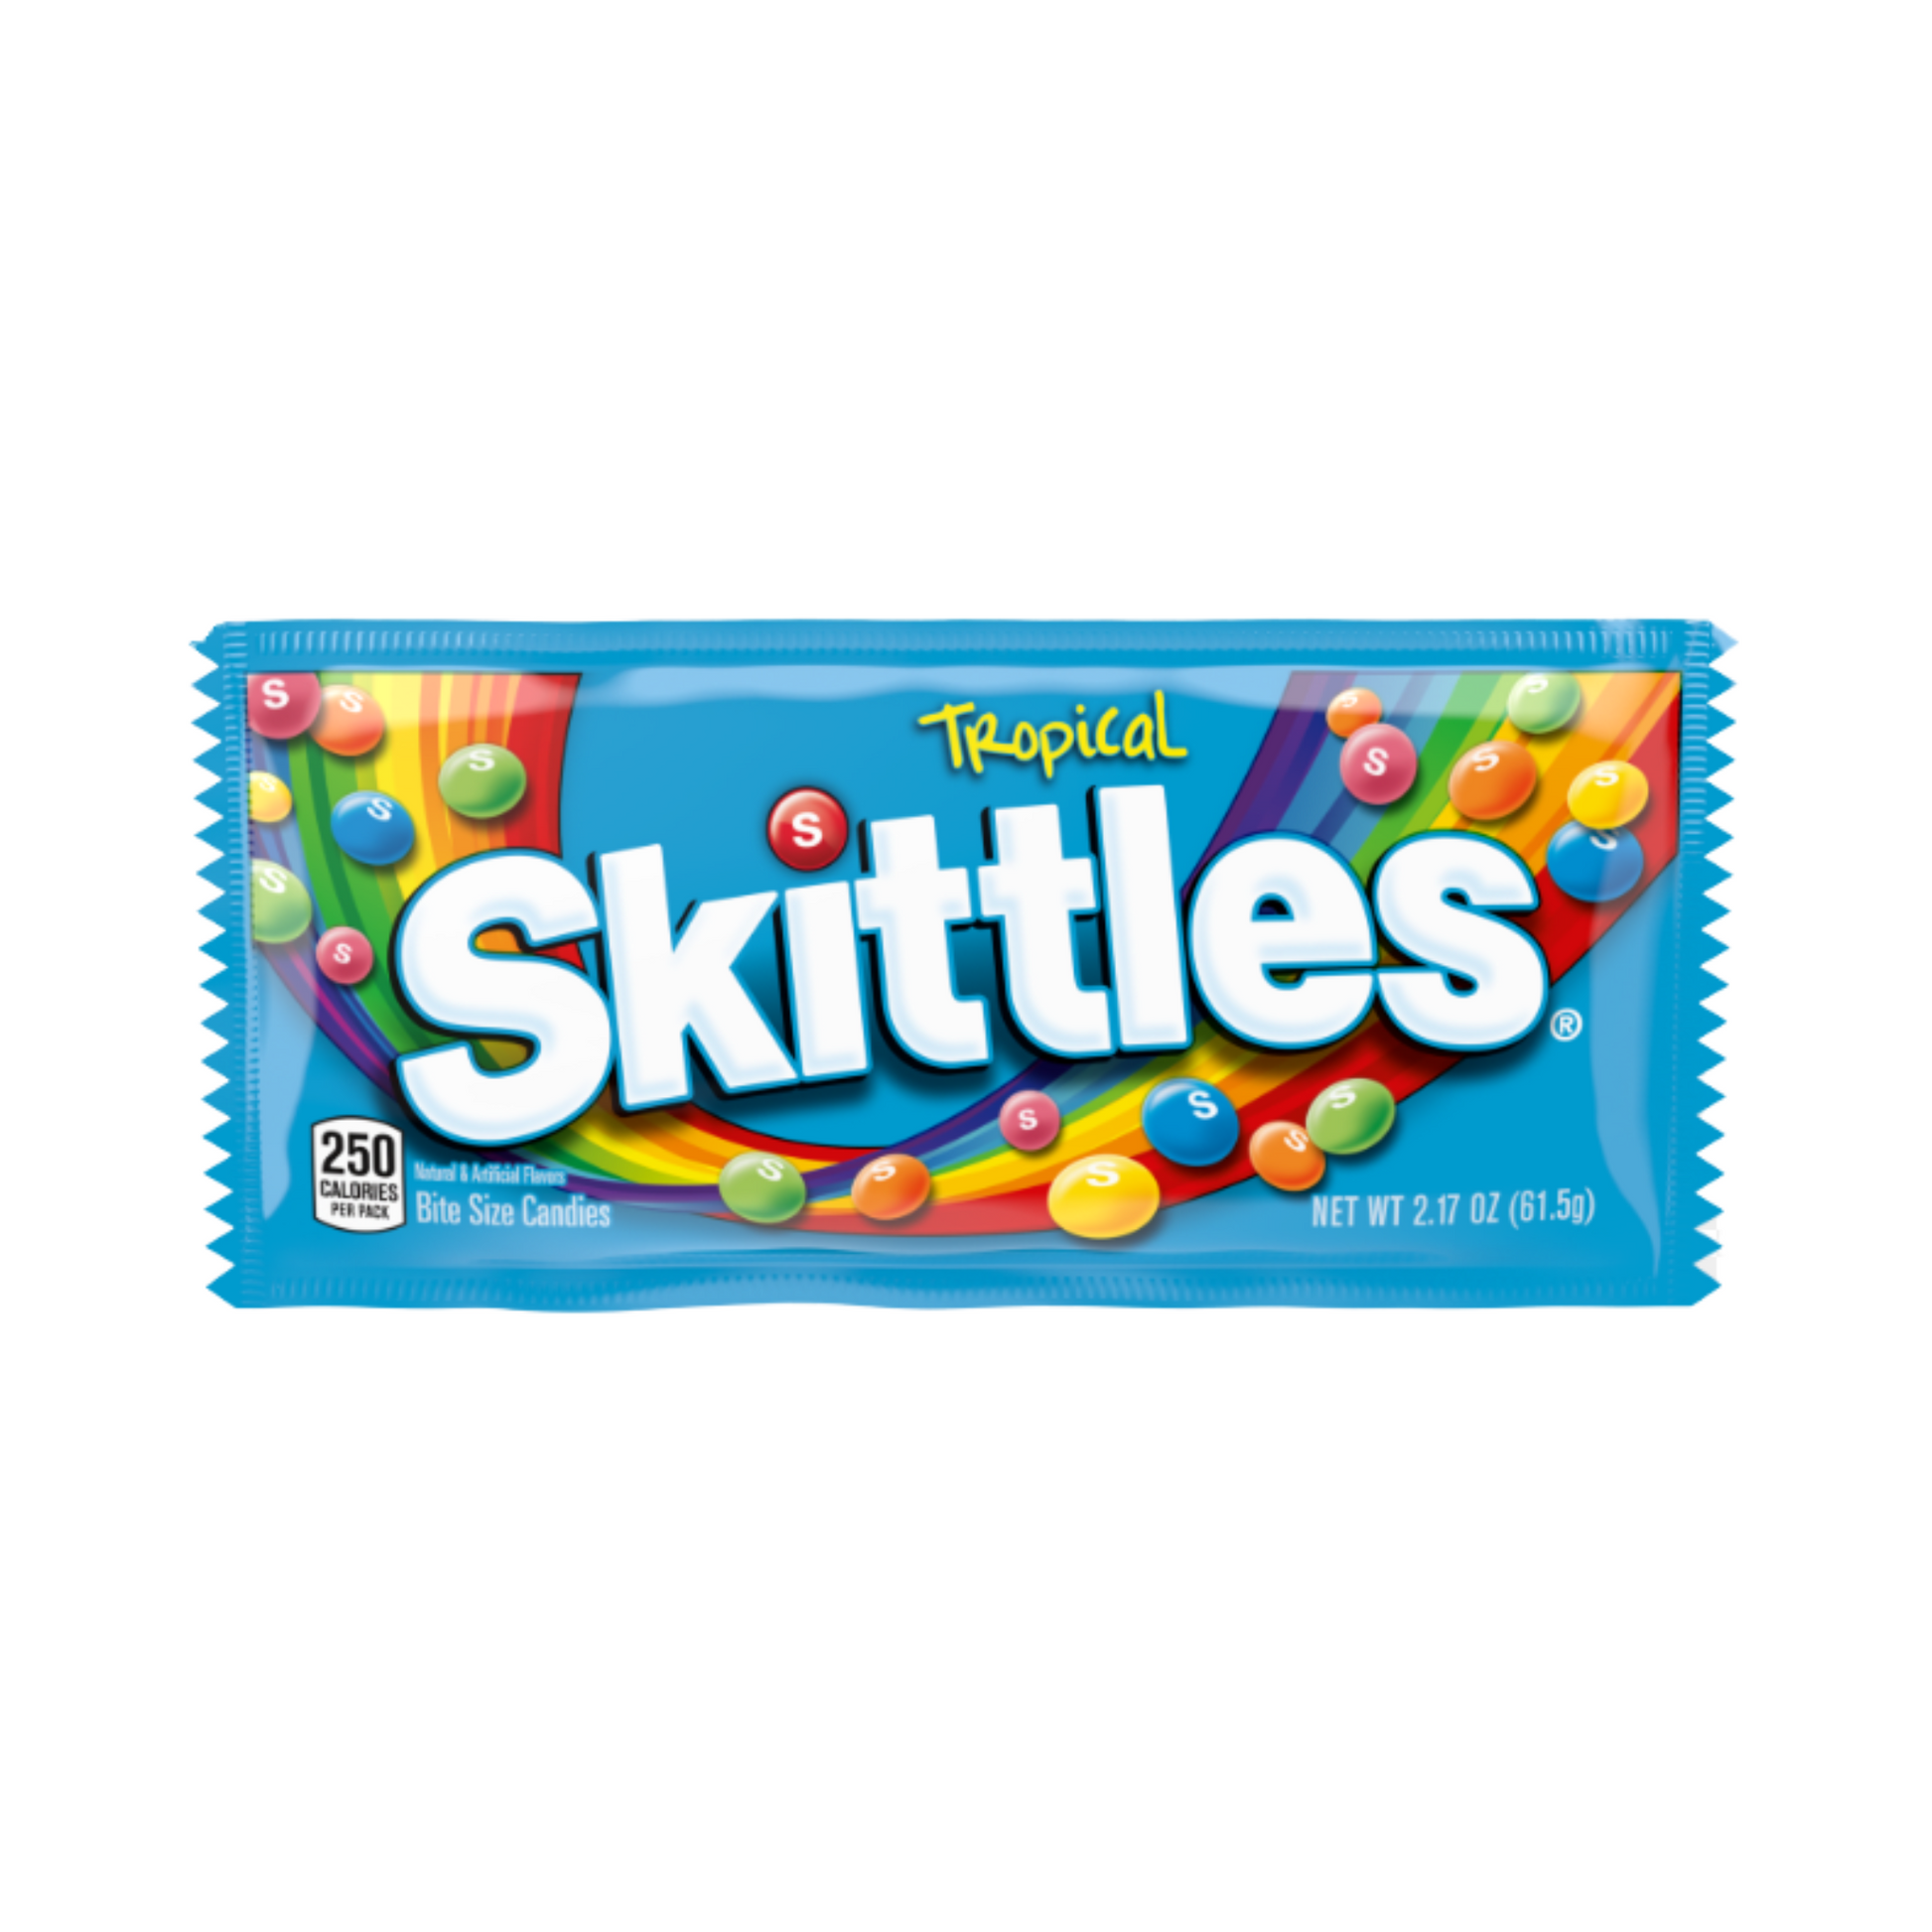 Skittles Add-On - snackmtn